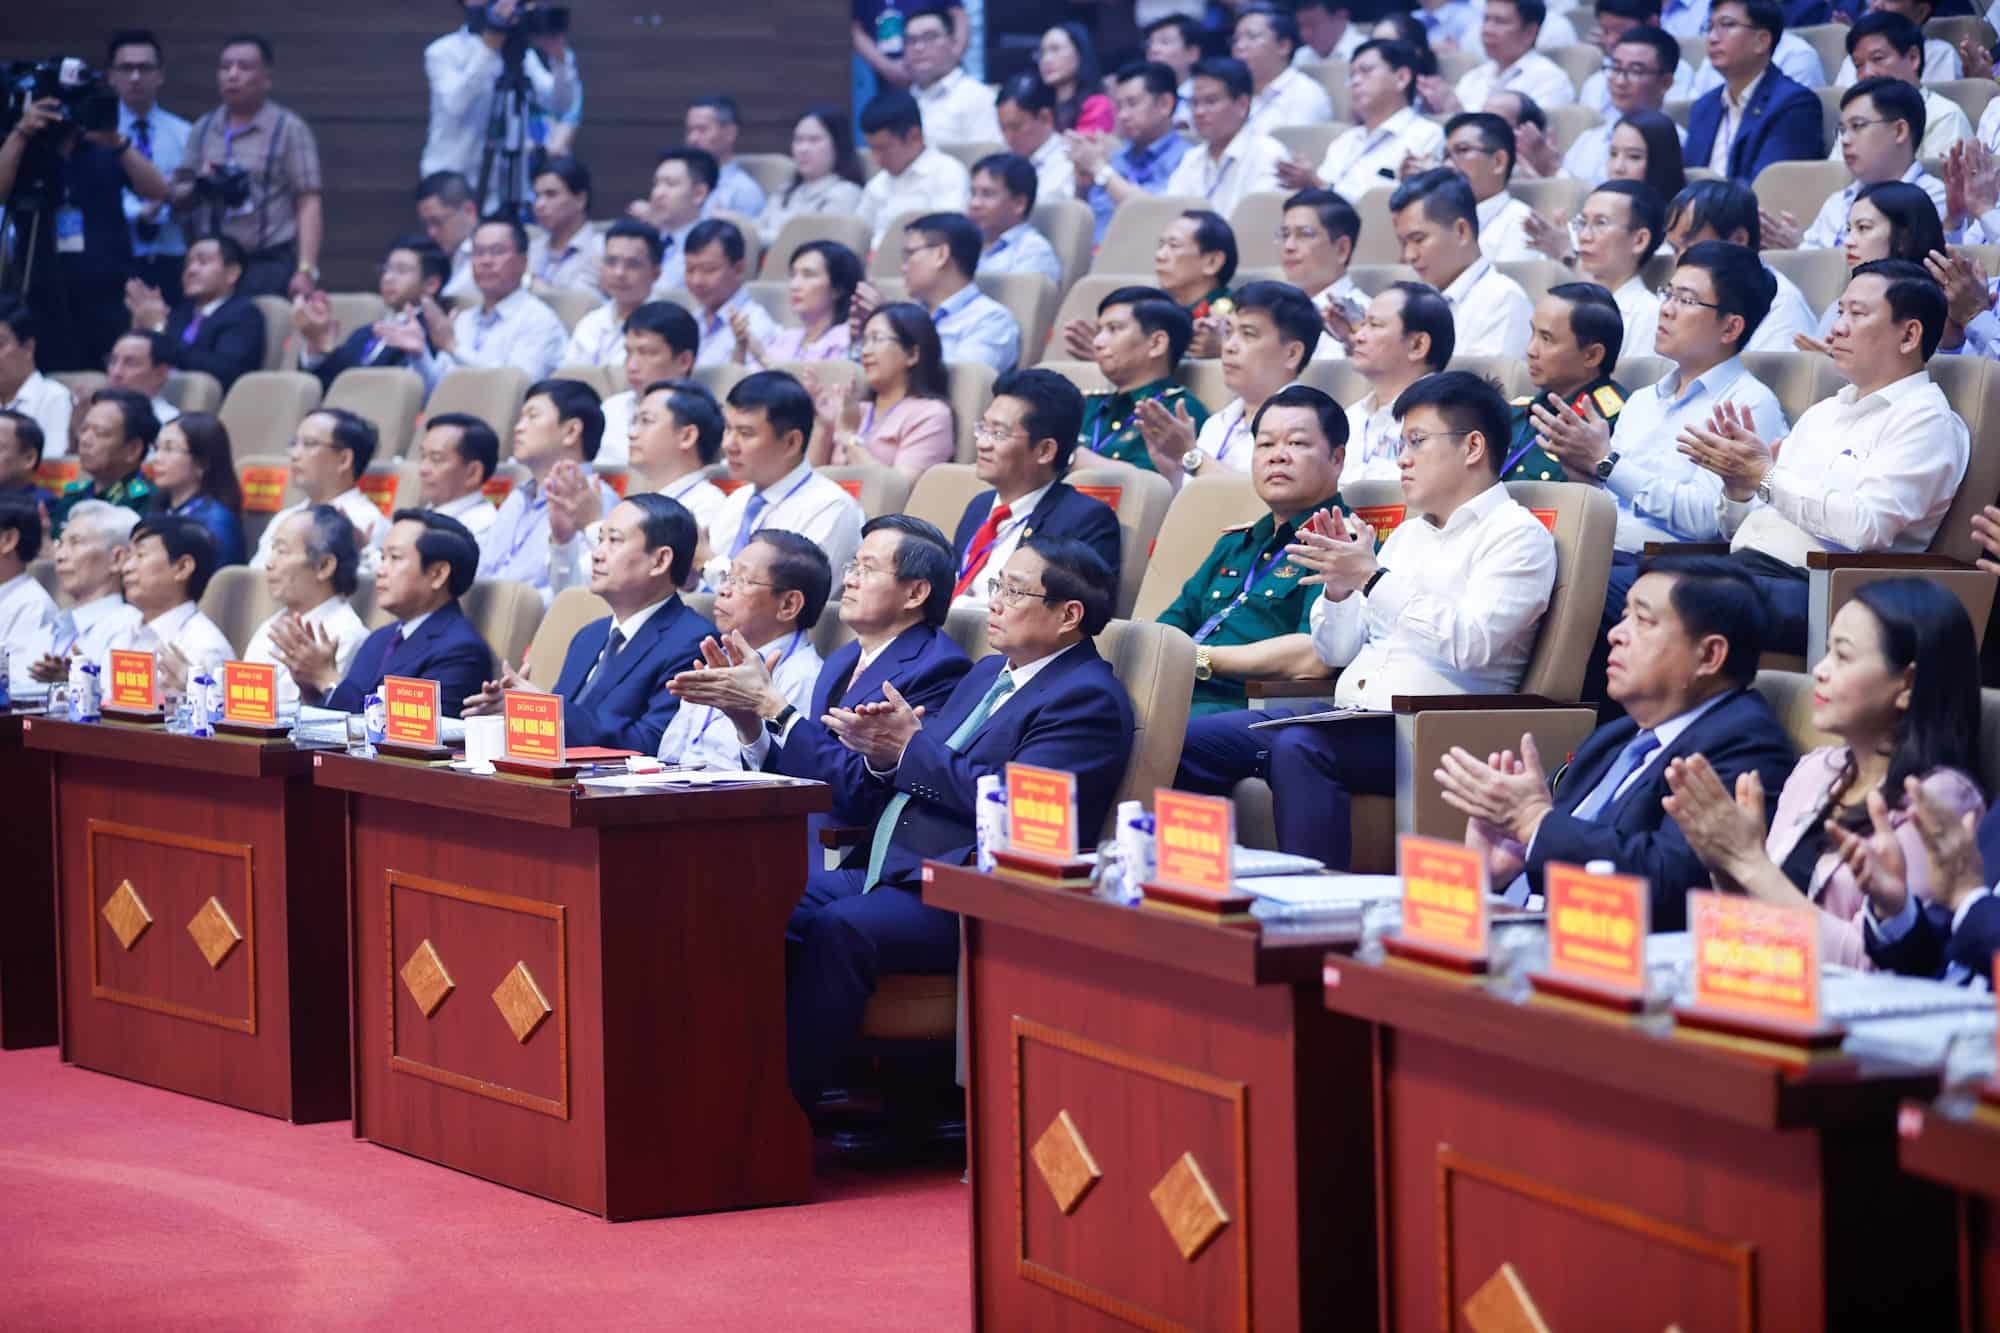 Các đại biểu tham dự hội nghị công bố quy hoạch tỉnh Ninh Bình thời kỳ 2021 - 2030, tầm nhìn đến năm 2050. Ảnh: Nguyễn Hải